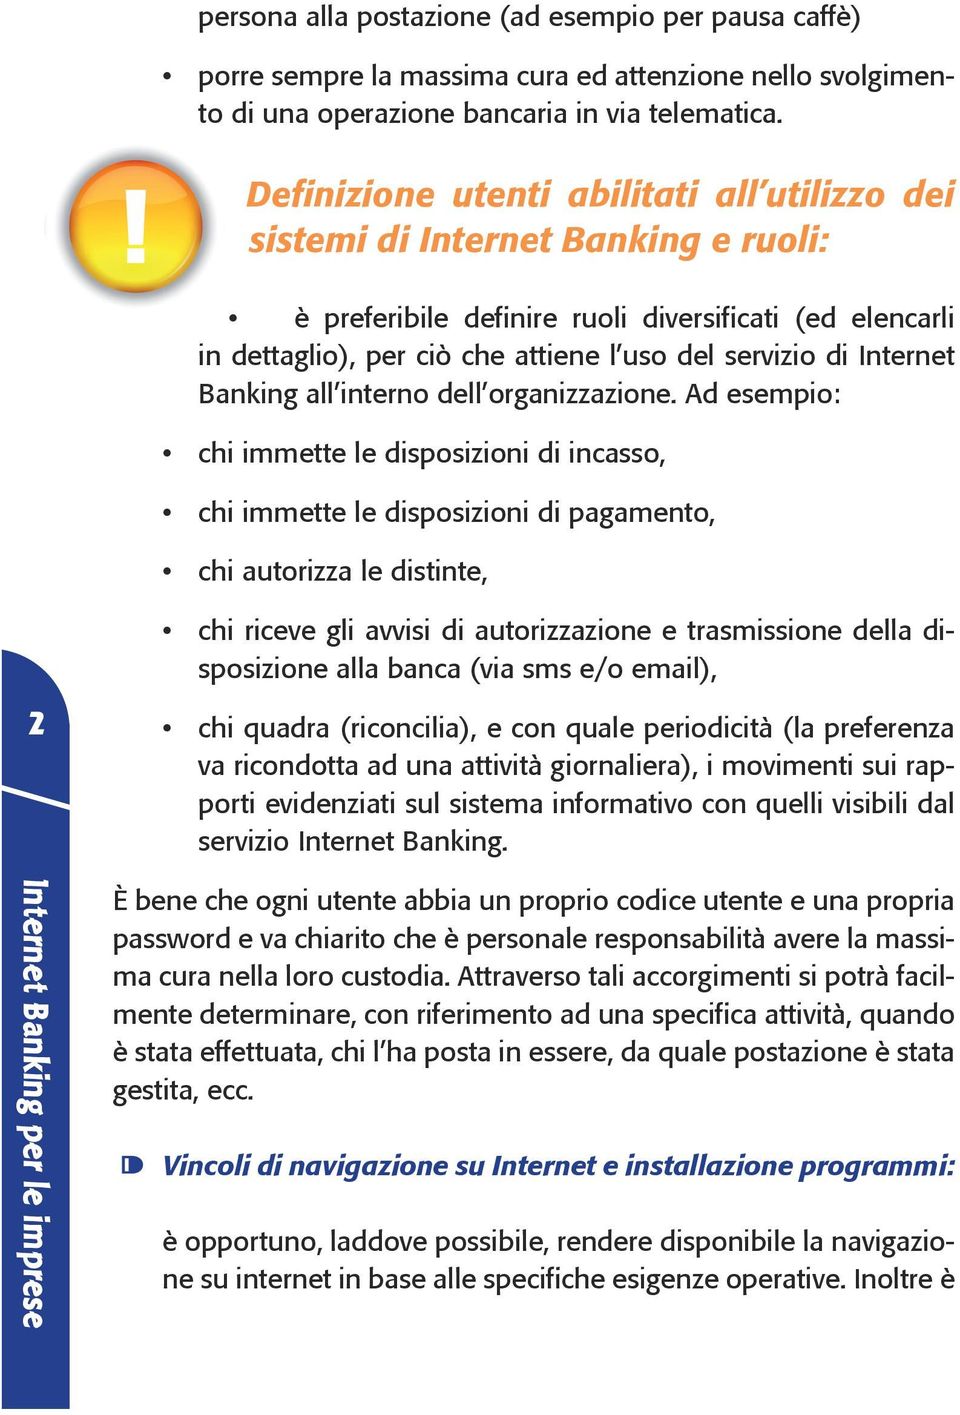 Internet Banking all interno dell organizzazione.